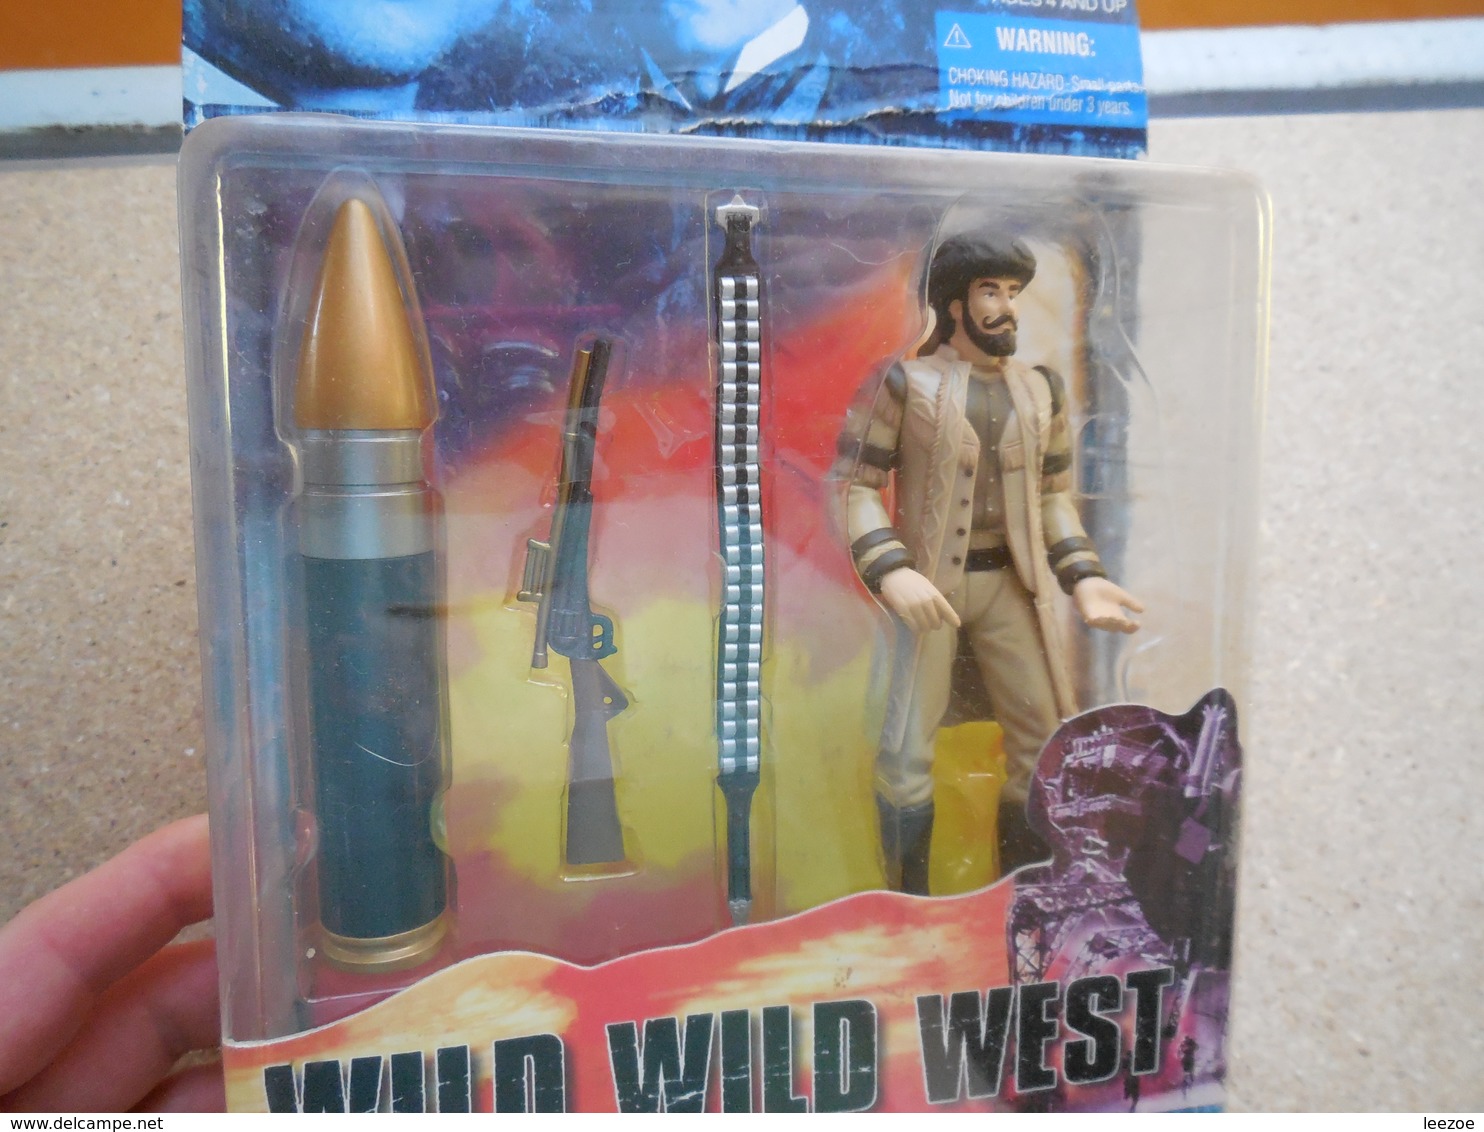 Wild Wid West Figurine Film Will Smith, ARTEMUS GORDON - Little Figures - Plastic